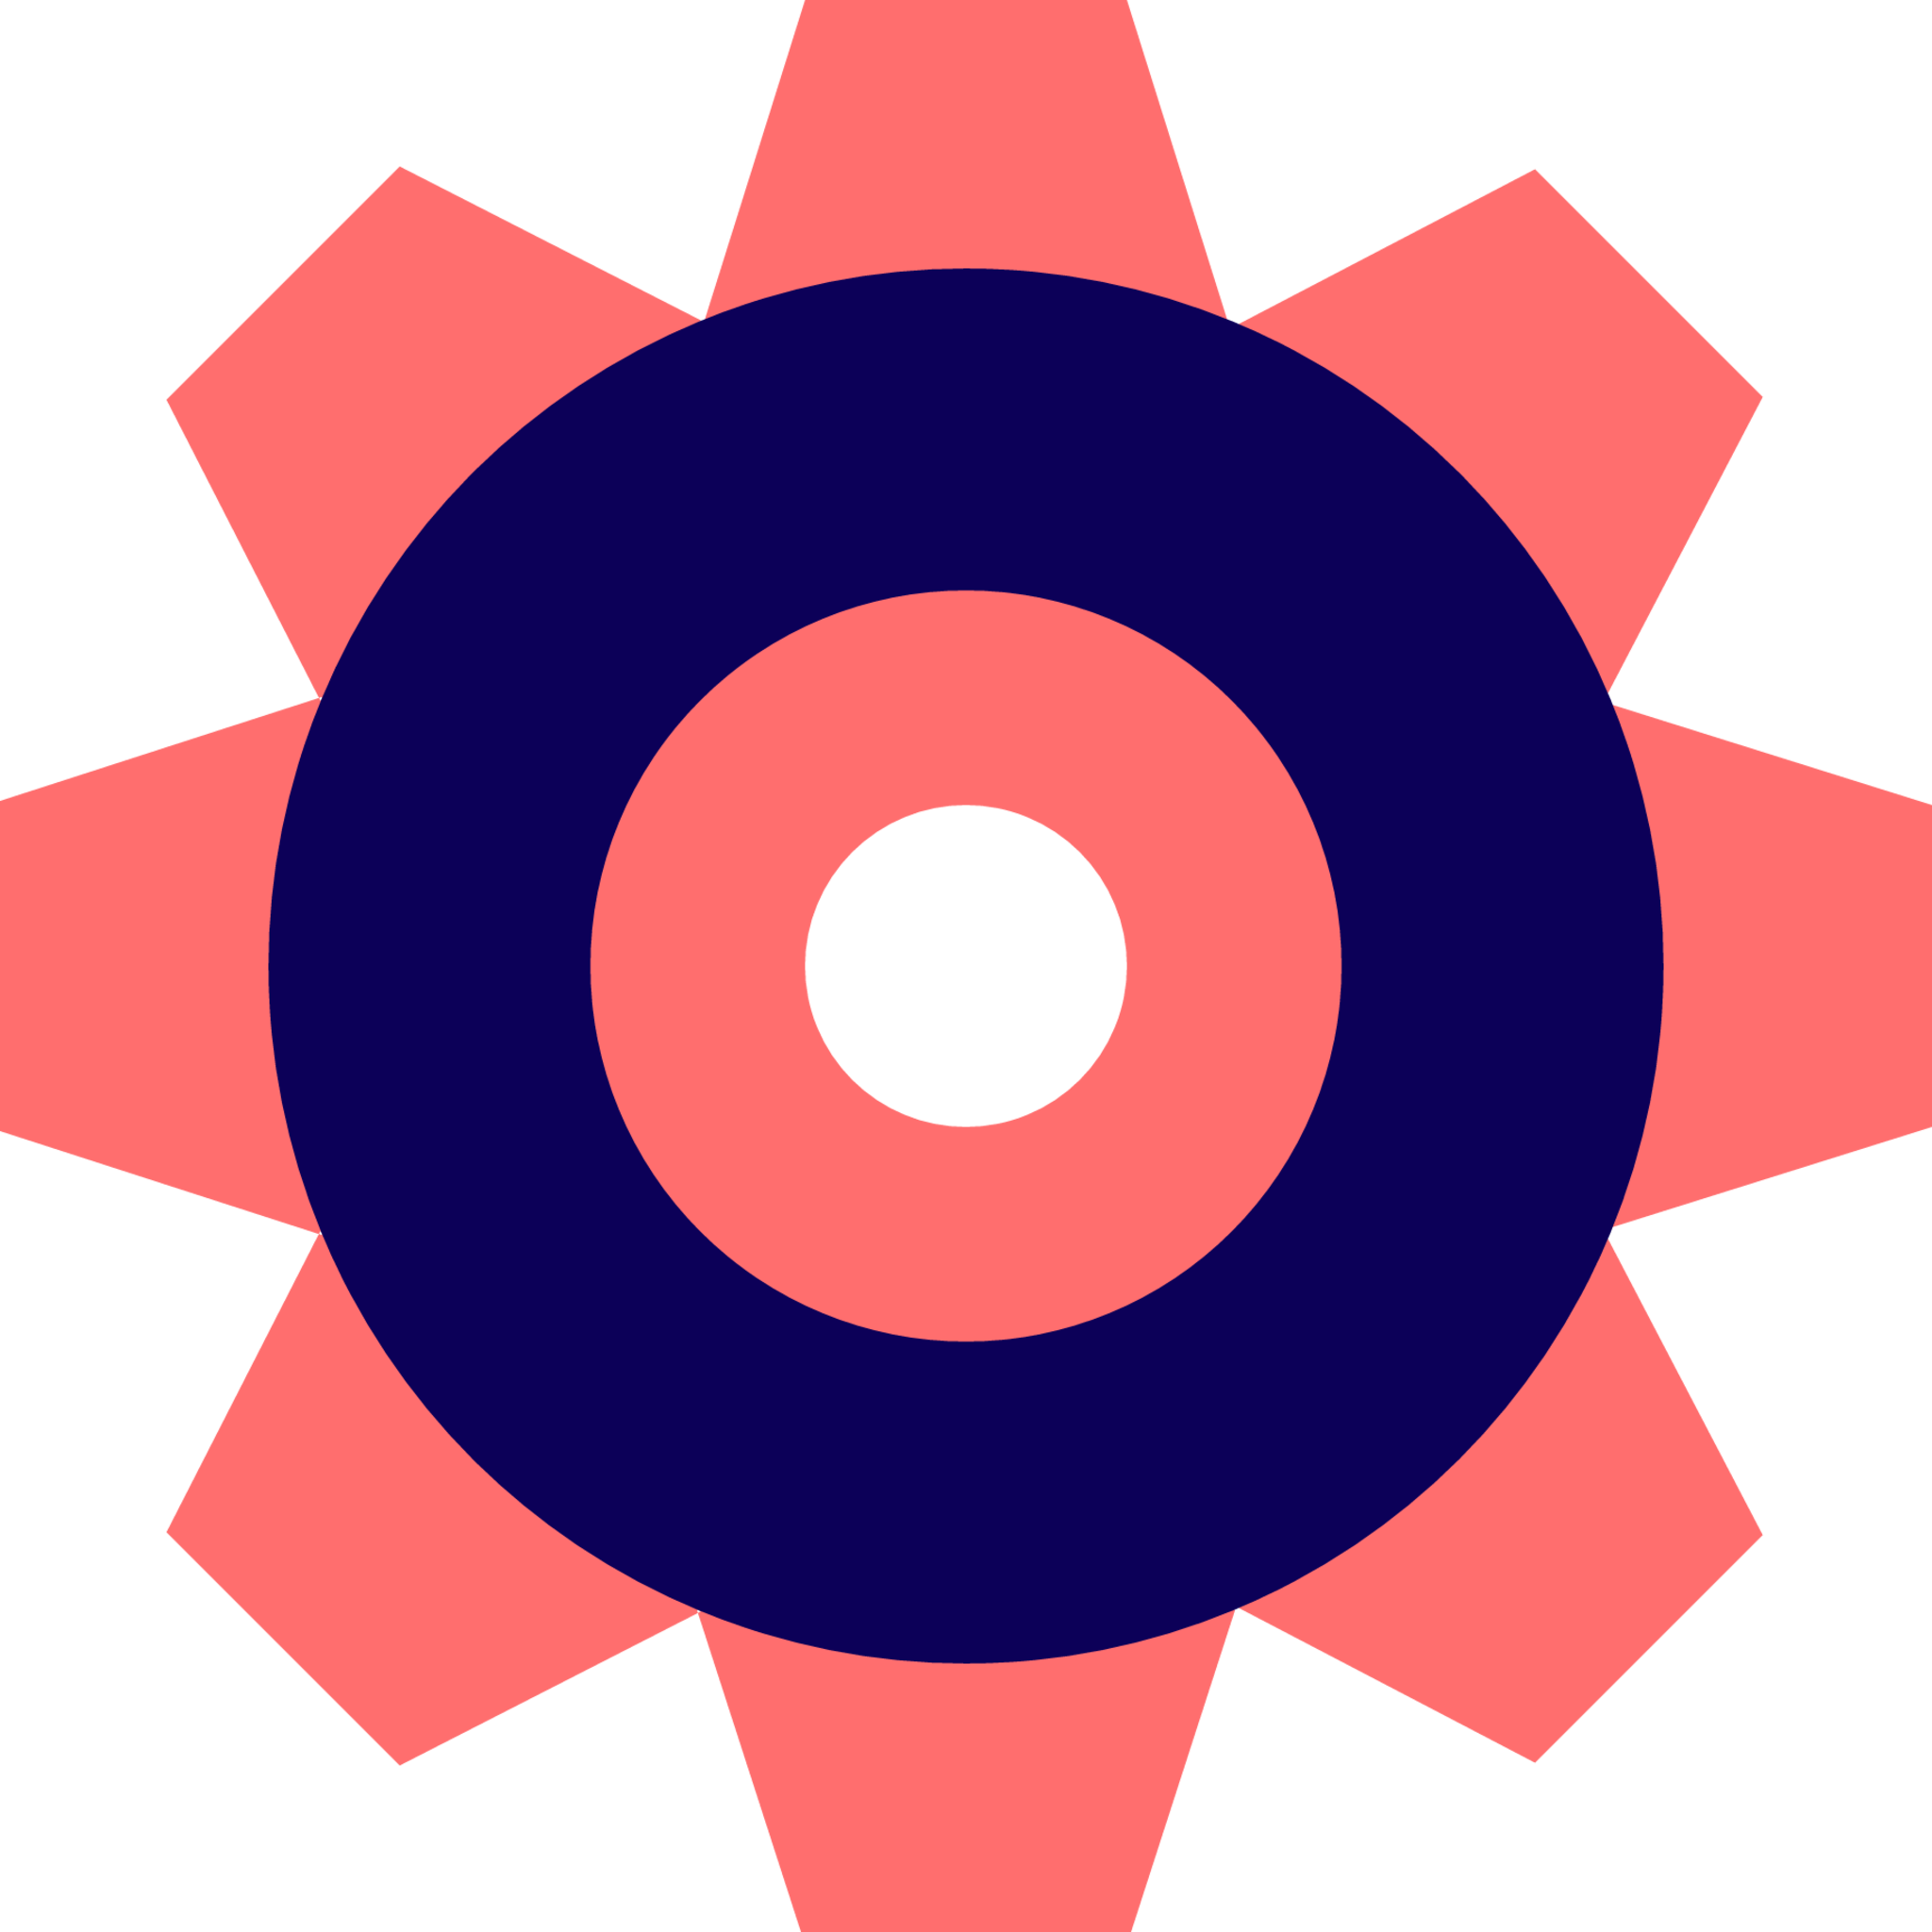 cog icon